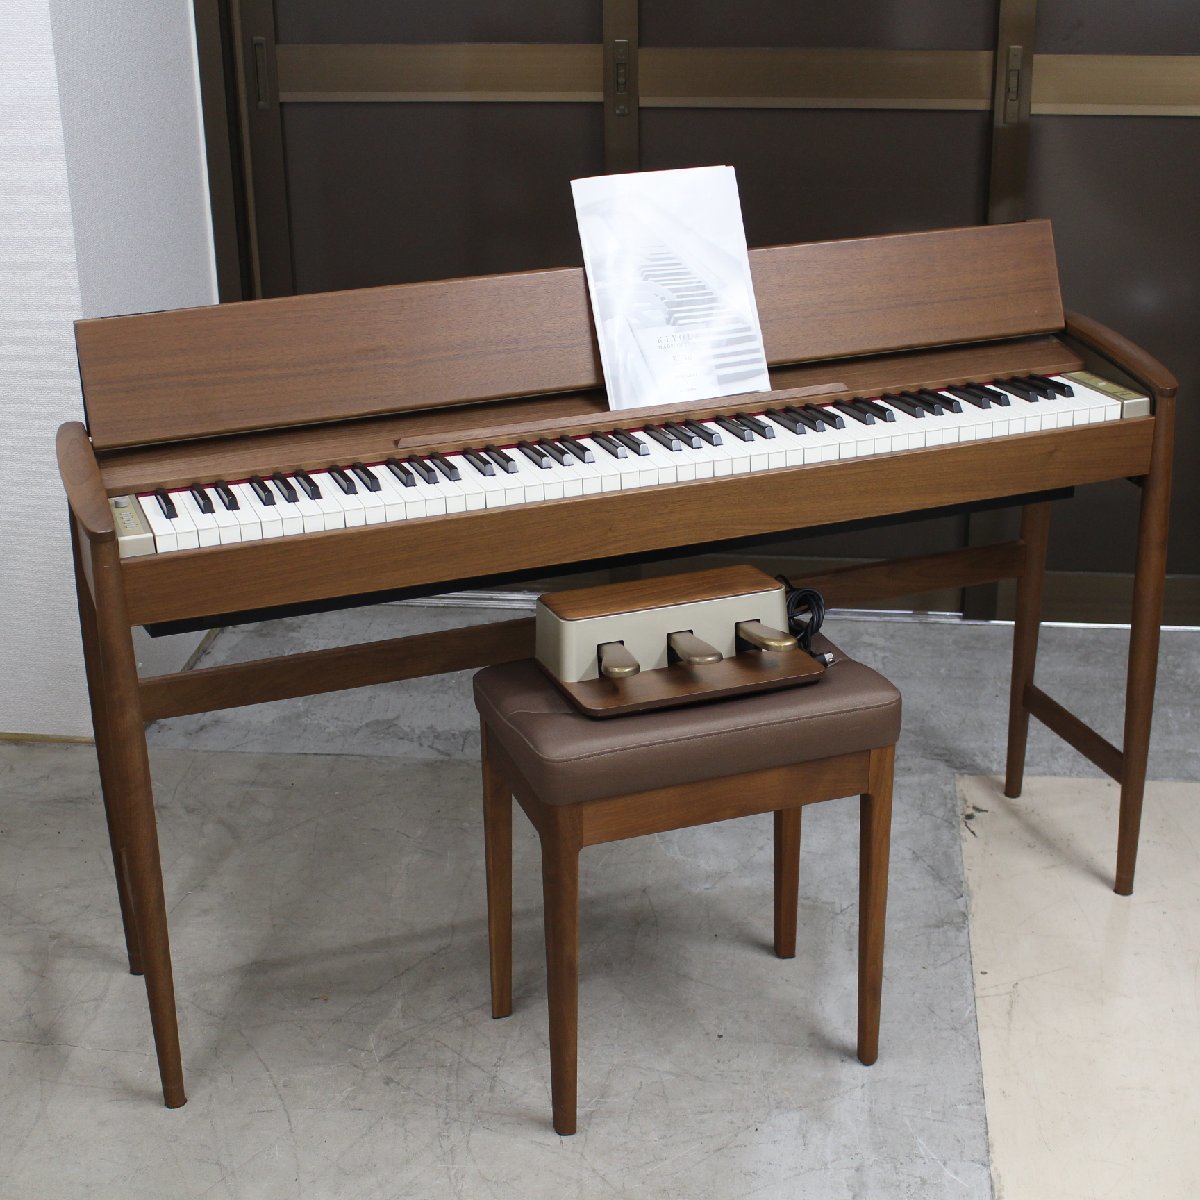 東京都渋谷区にて ローランド カリモク 電子ピアノ KF-10-KW  2015年製 を出張買取させて頂きました。